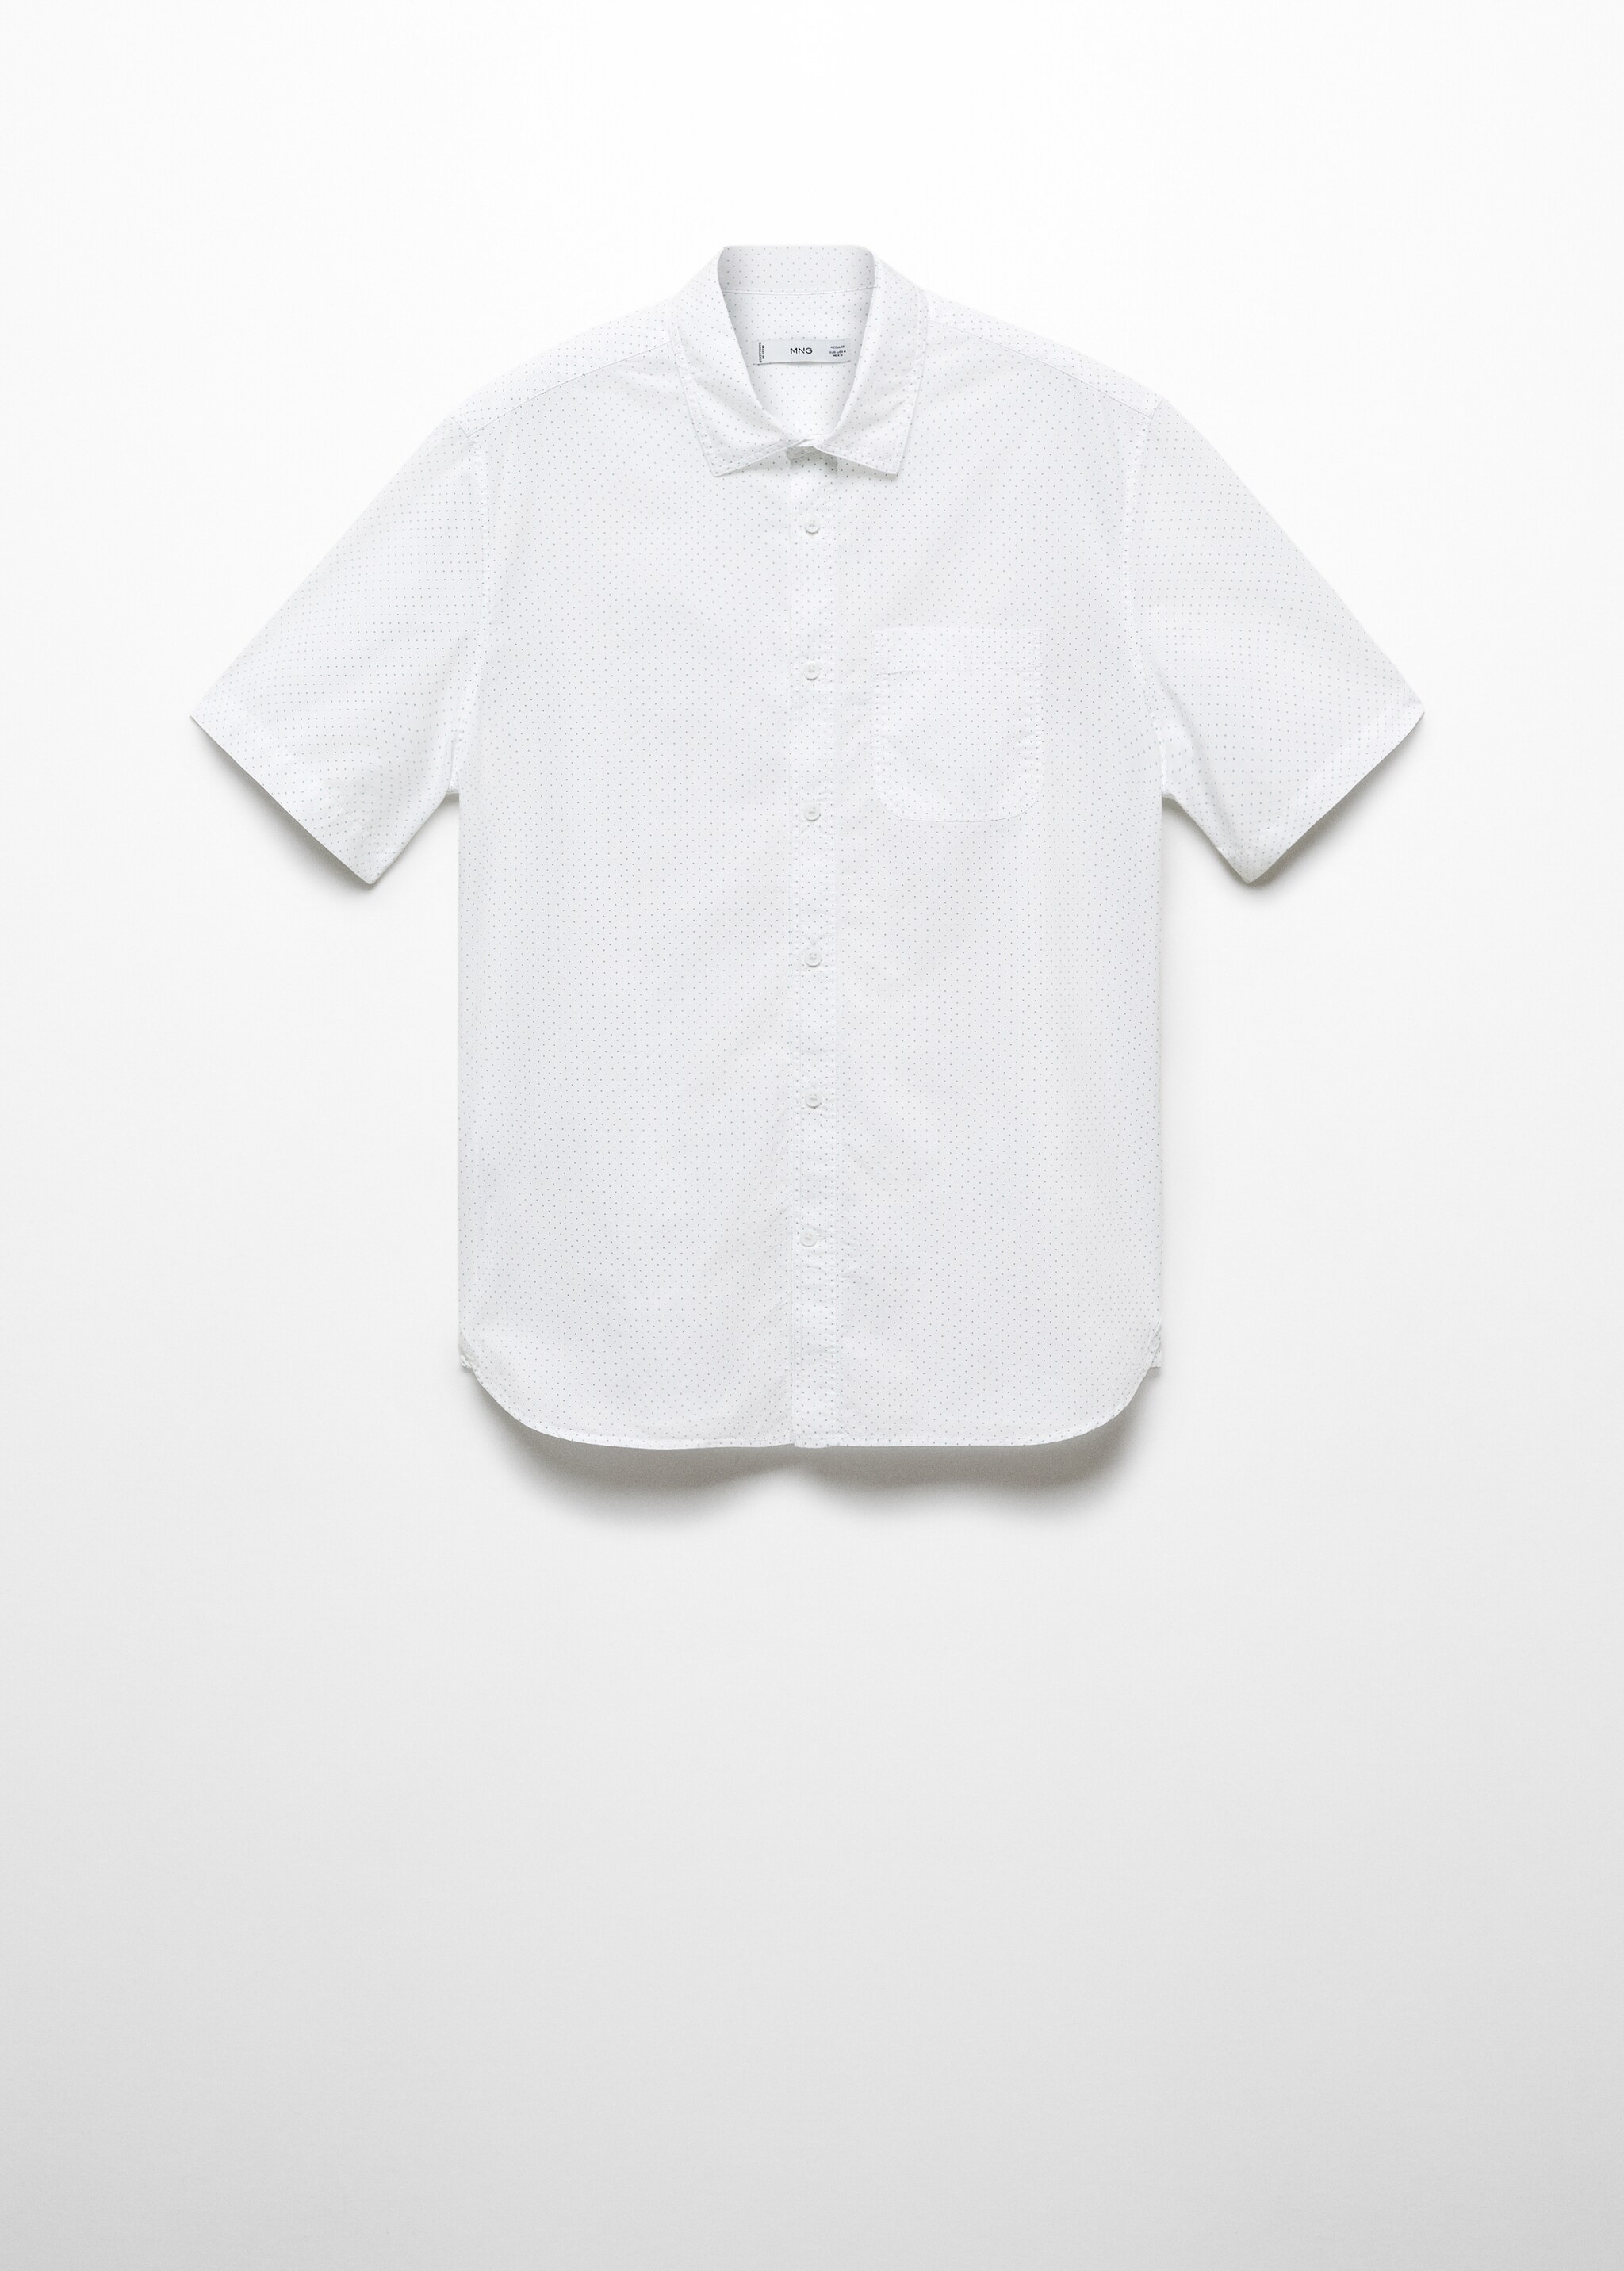 Рубашка с мелким принтом 100% хлопок с короткими рукавами - Изделие без модели